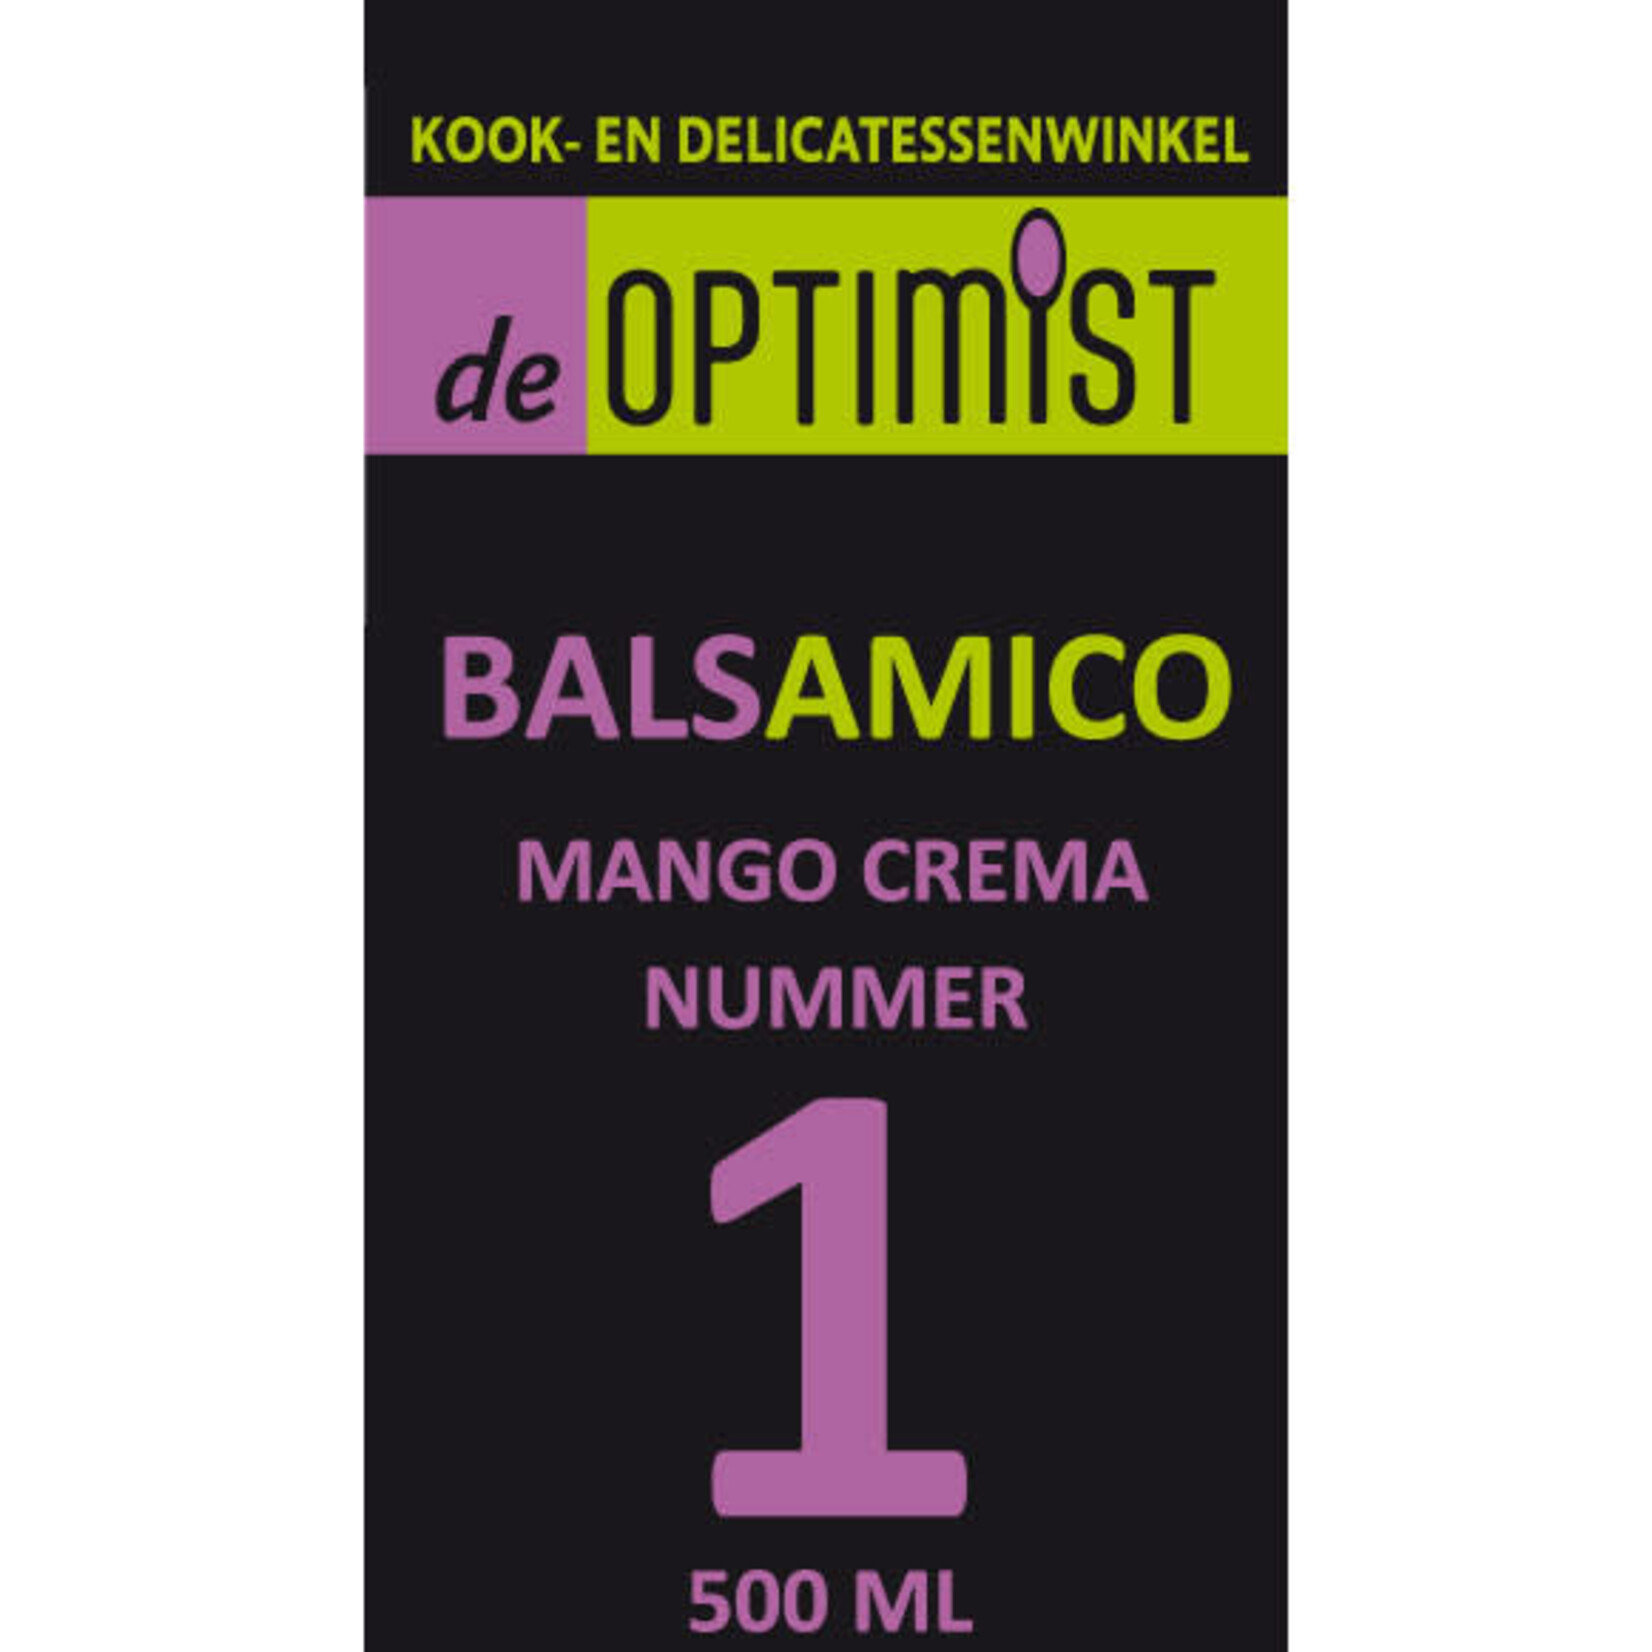 DE OPTIMIST DE OPTIMIST BALSAMICO NUMMER 1